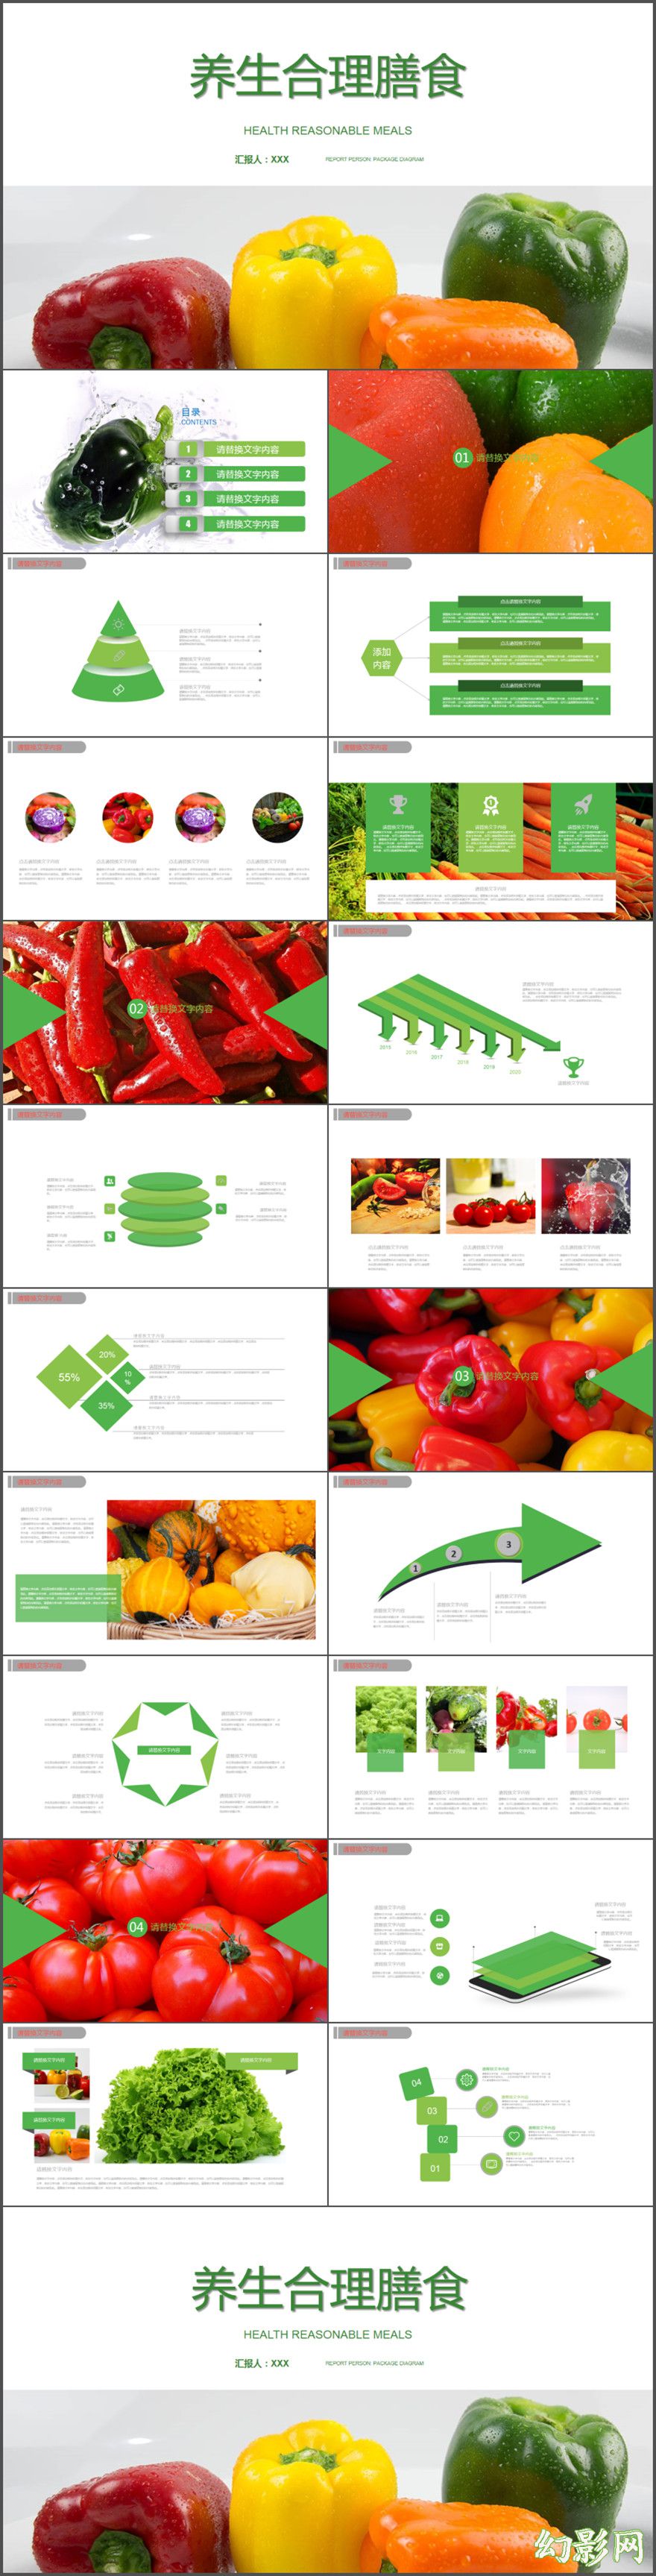 养生合理膳食健康养生蔬菜果园产品宣传总结计划PPT模版